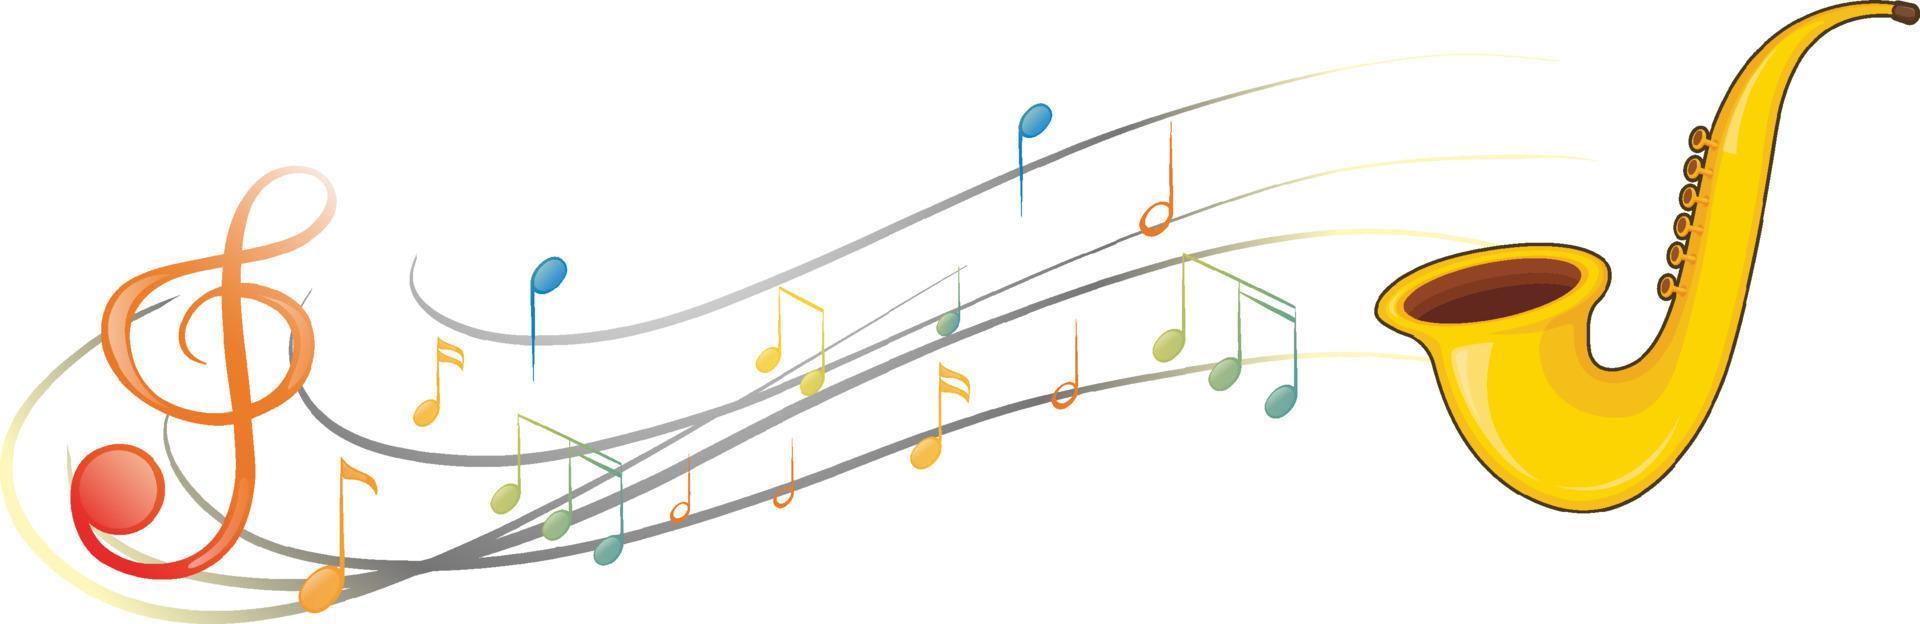 un sassofono con note musicali su sfondo bianco vettore